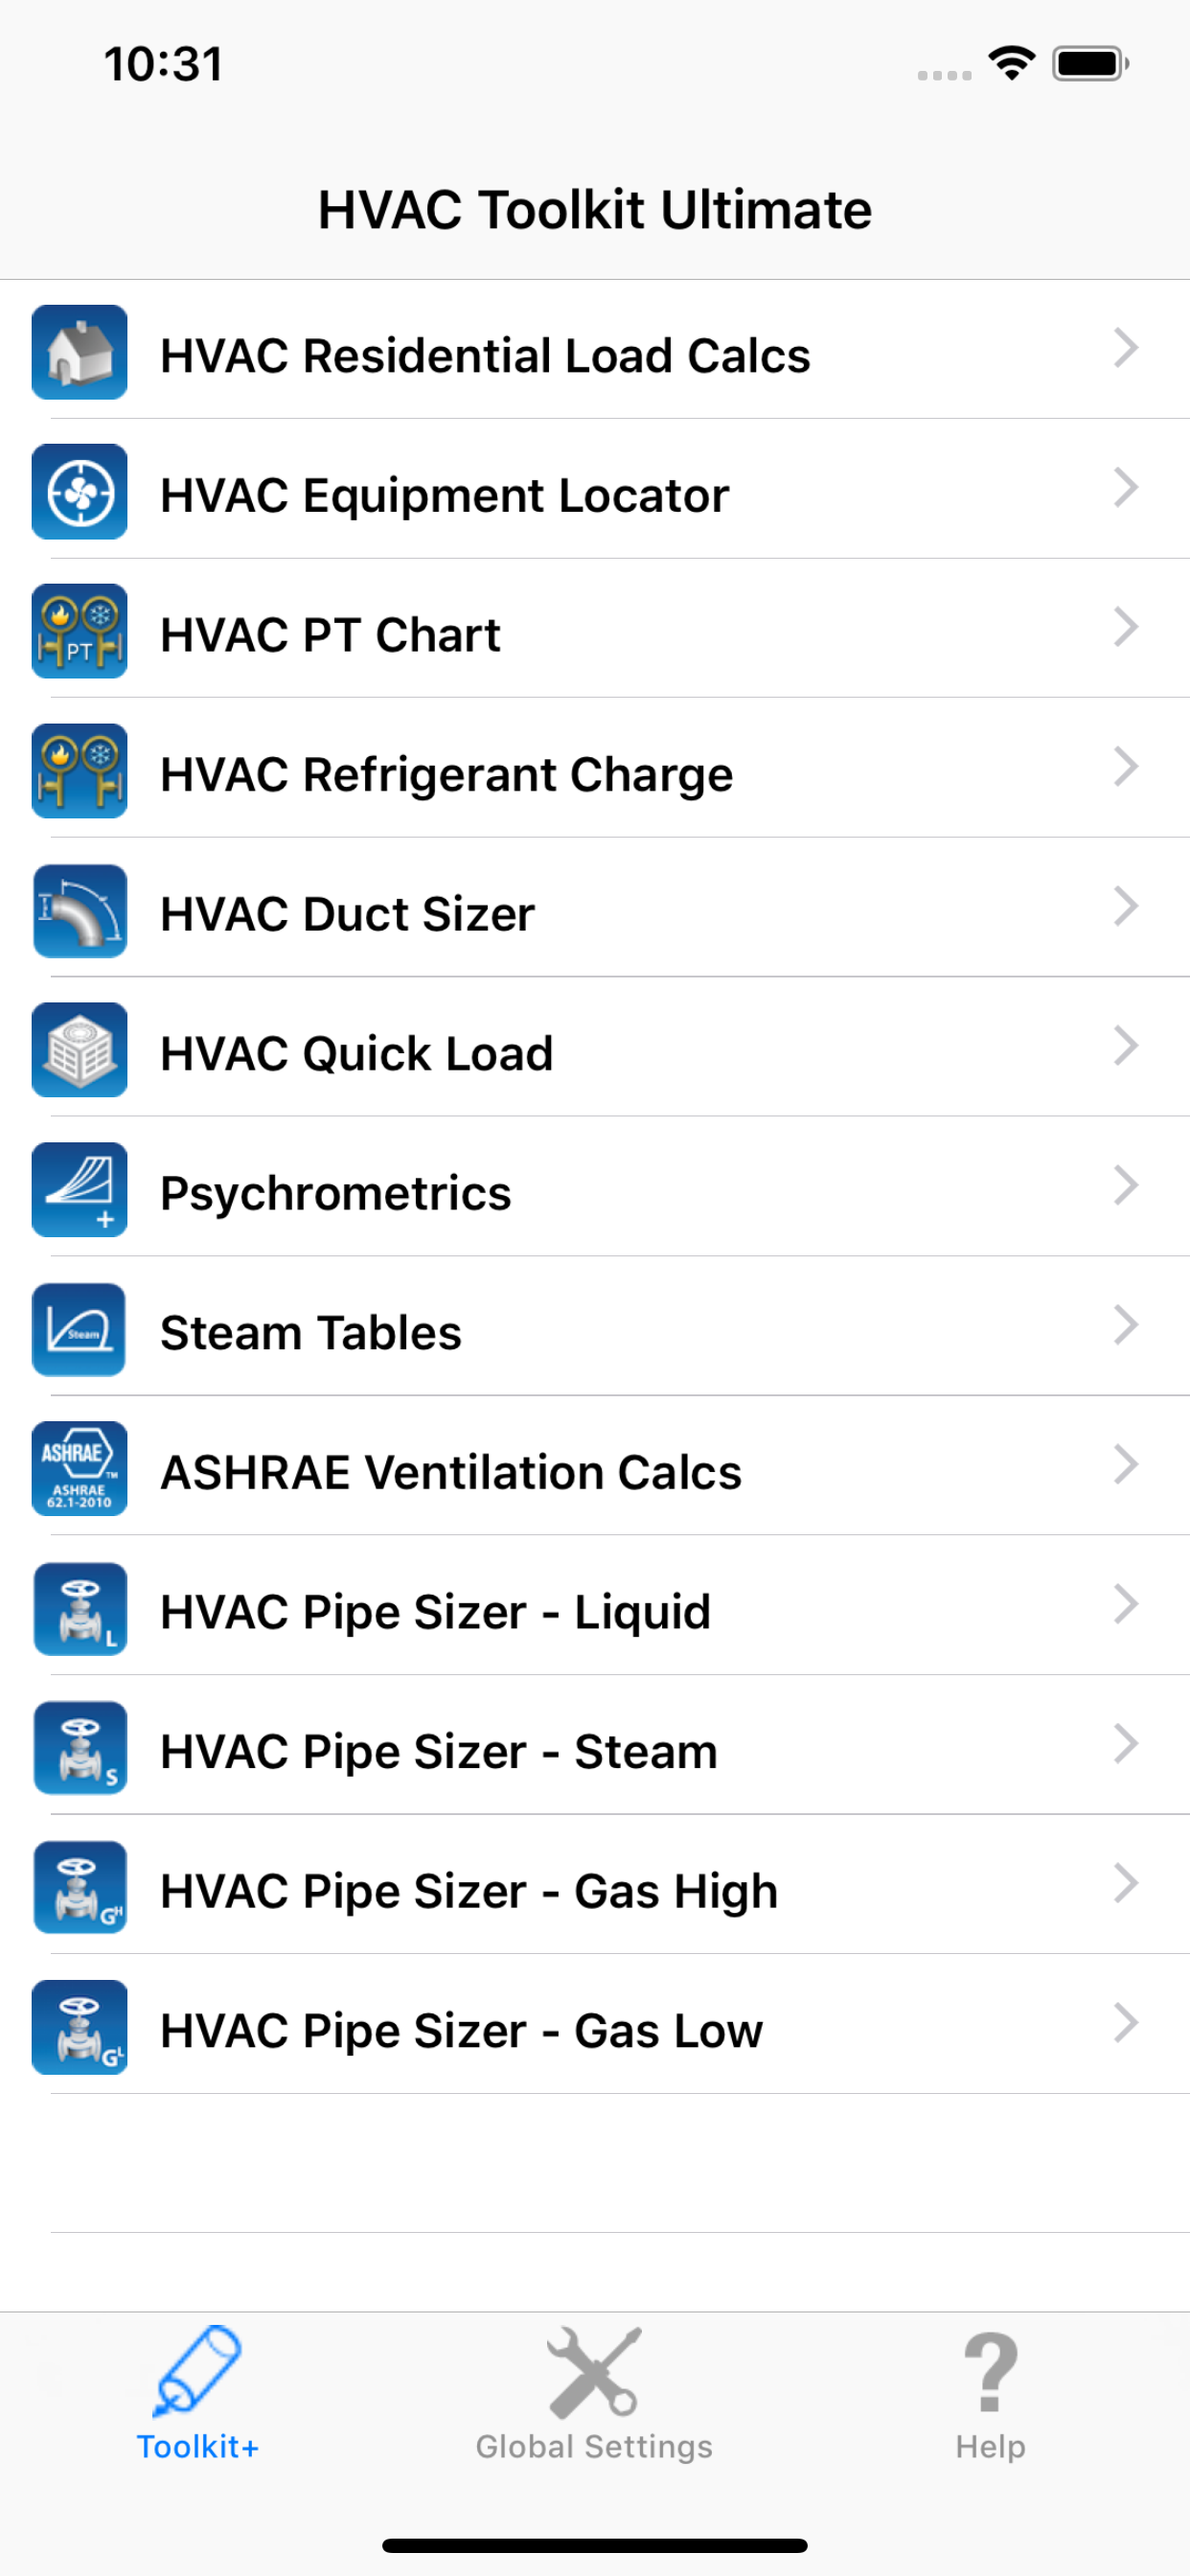 HVAC Toolkit Ultimate app list